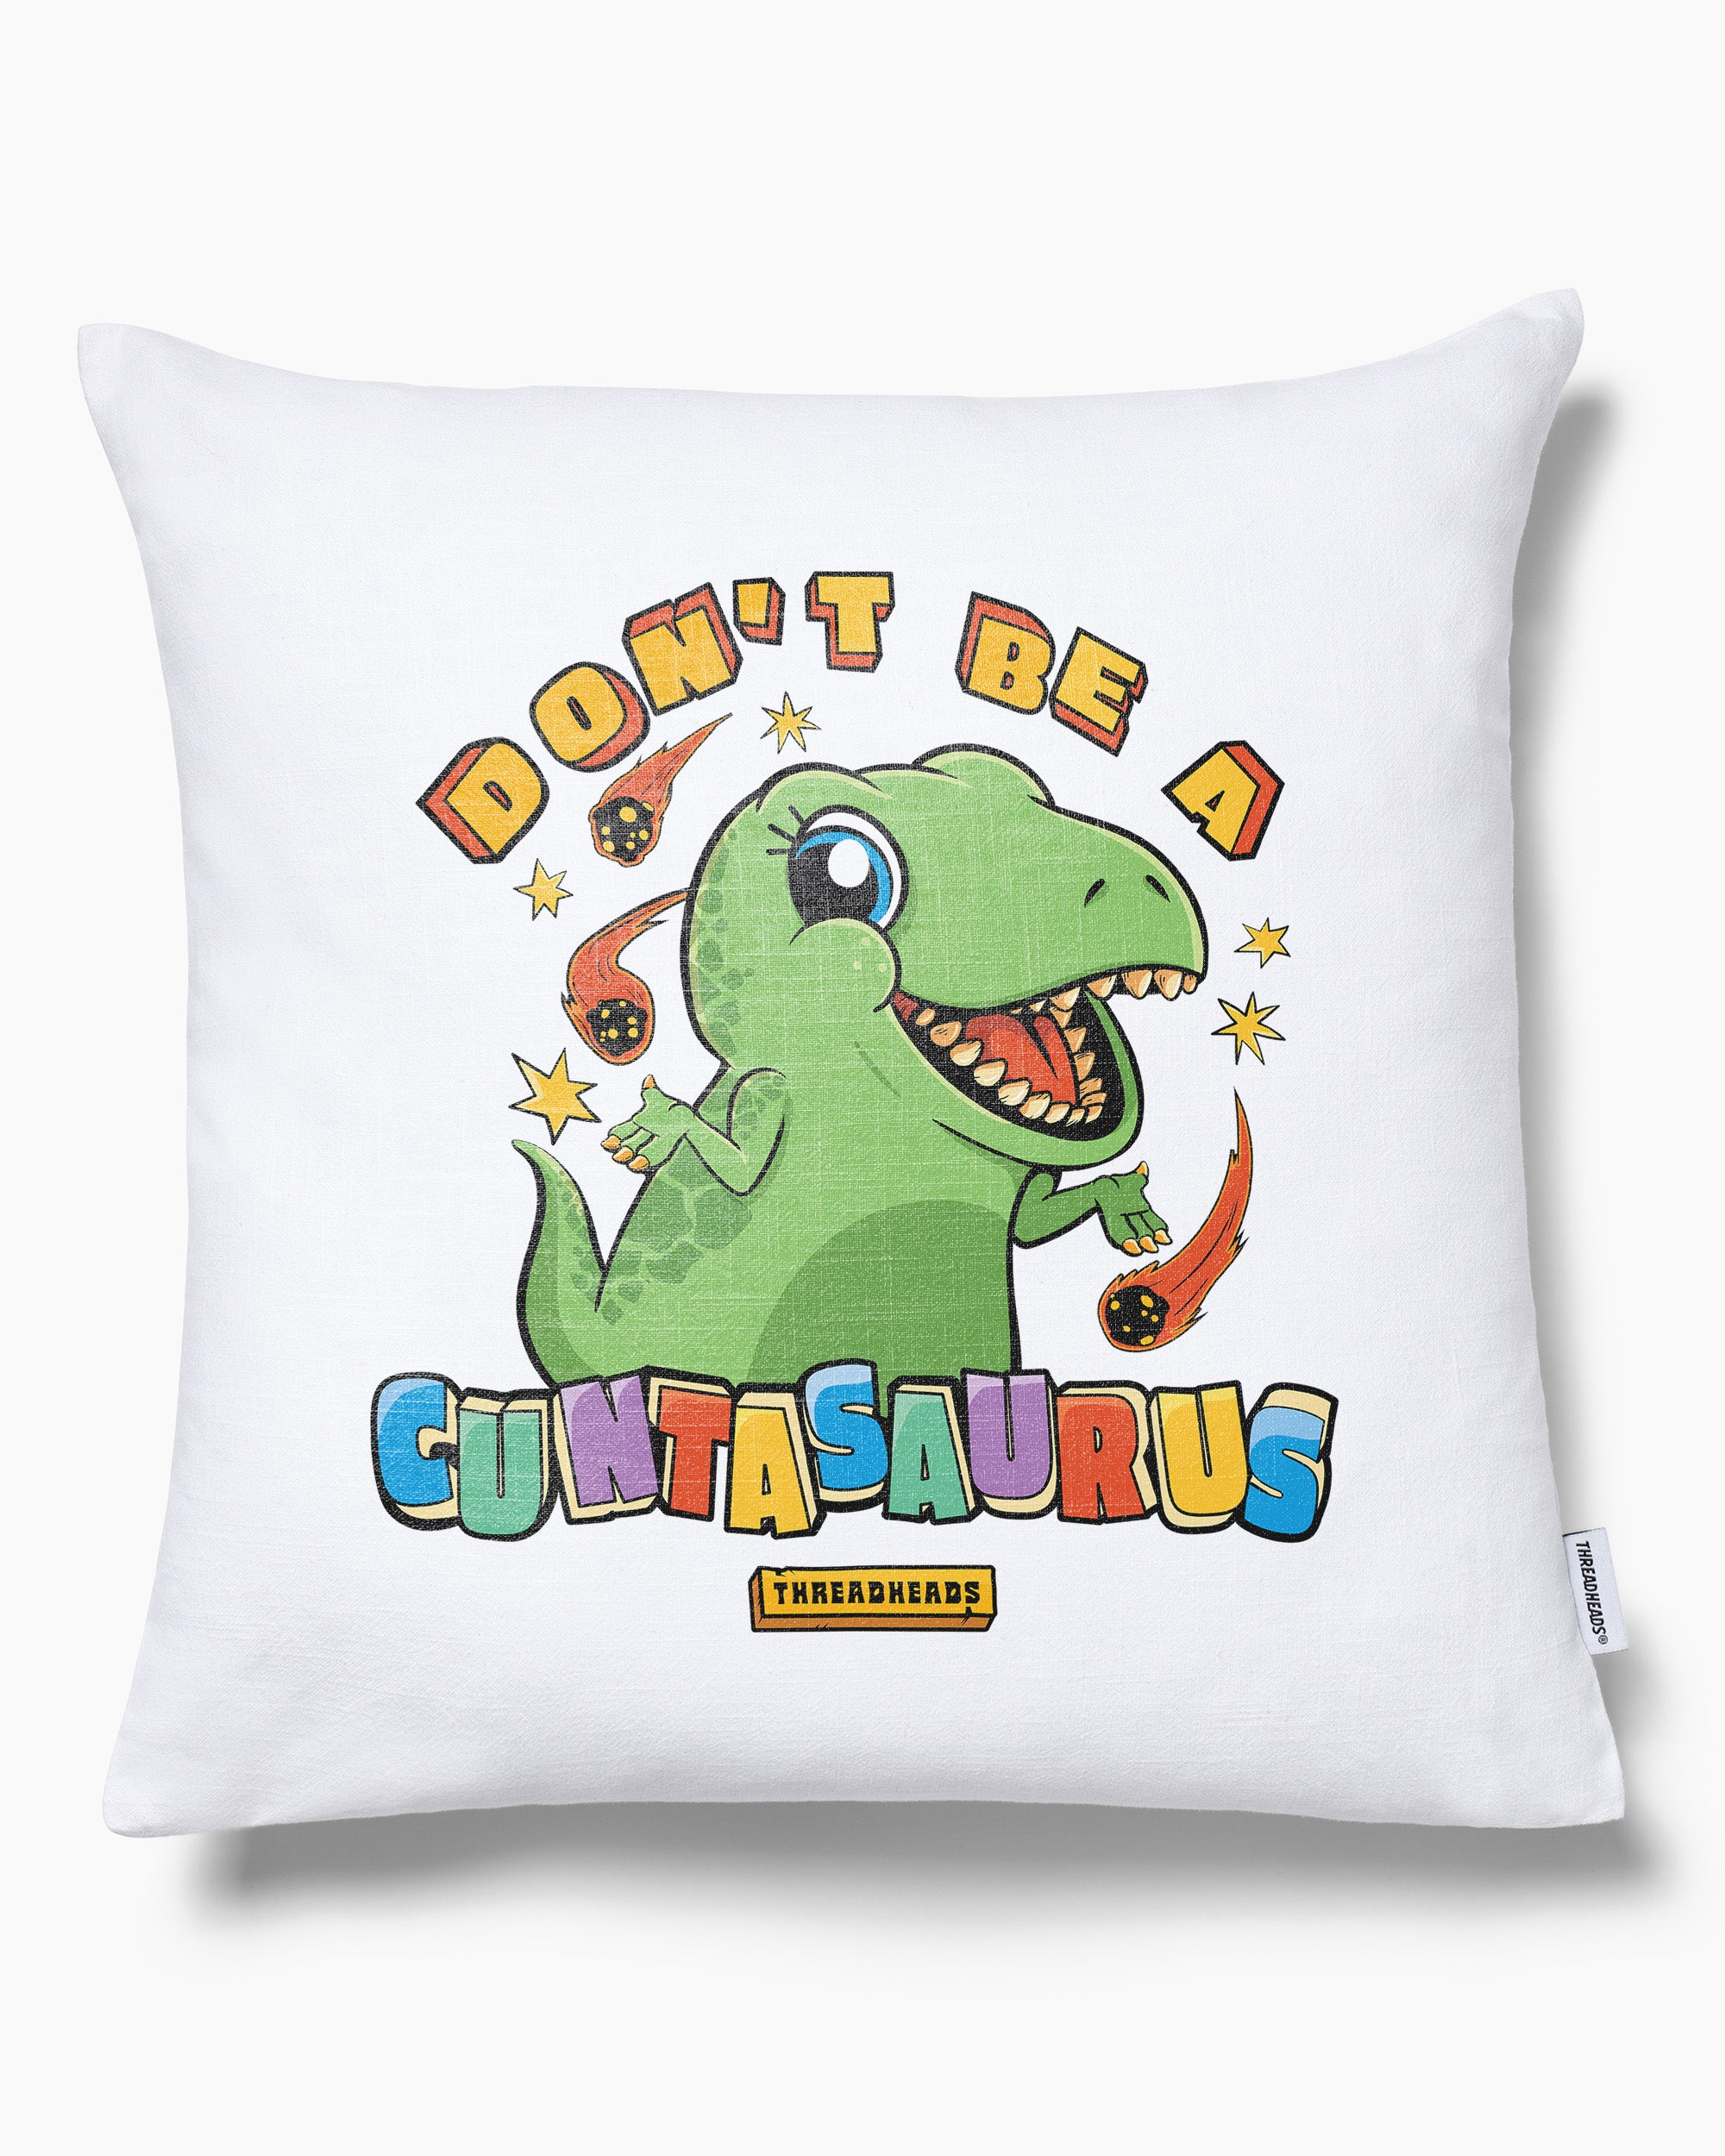 Don't Be a Cuntasaurus Cushion